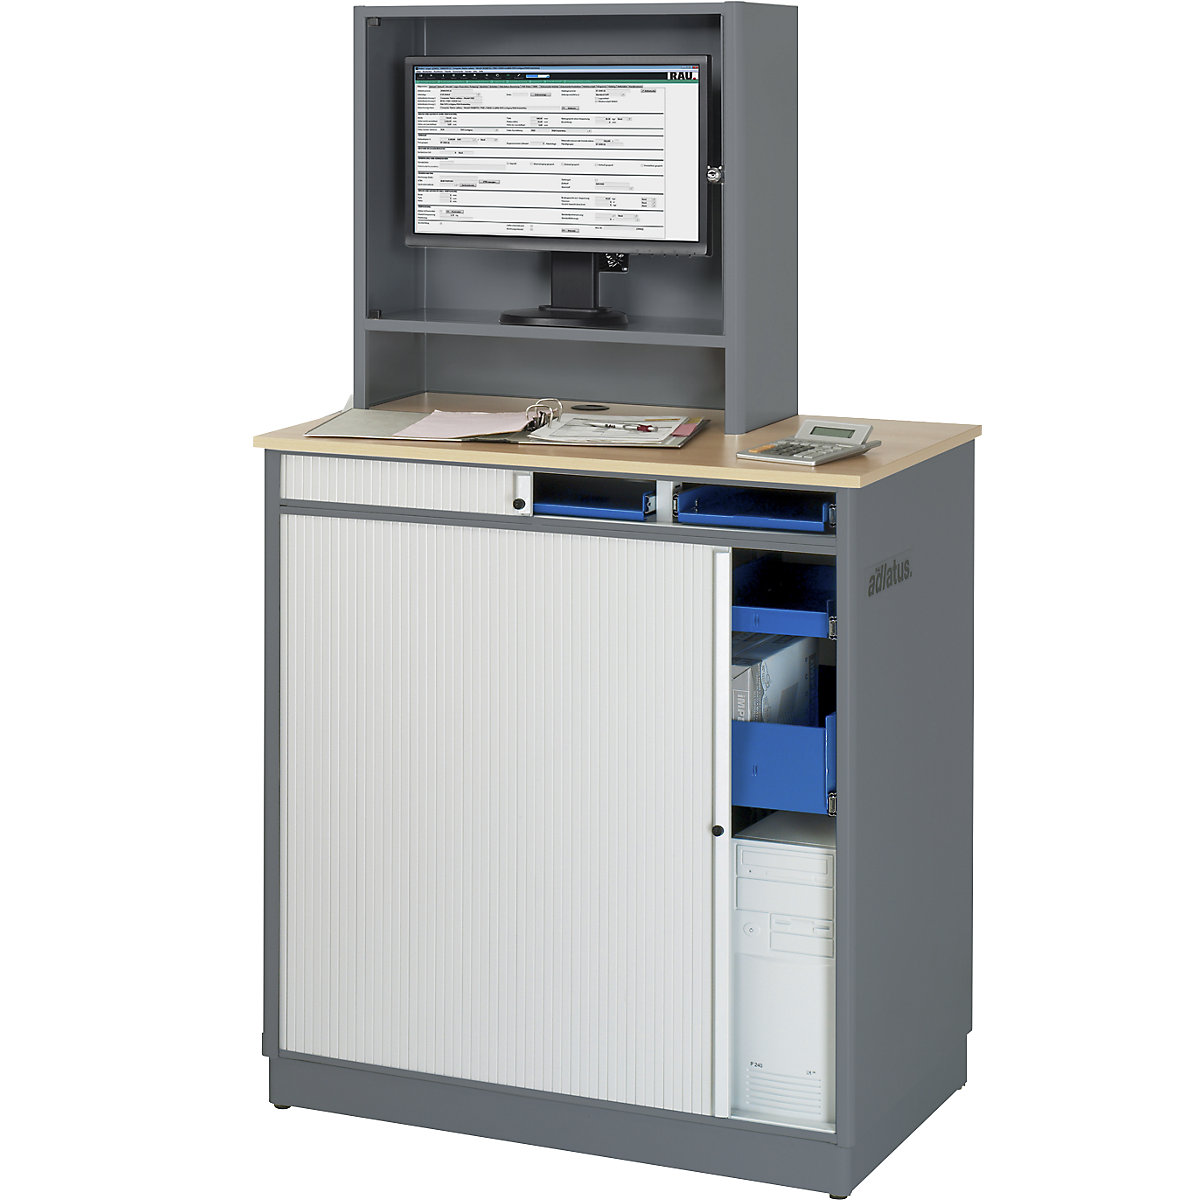 RAU Computer-Arbeitsplatz, HxBxT 1810 x 1030 x 660 mm, mit Monitorgehäuse, anthrazit-metallic / enzianblau